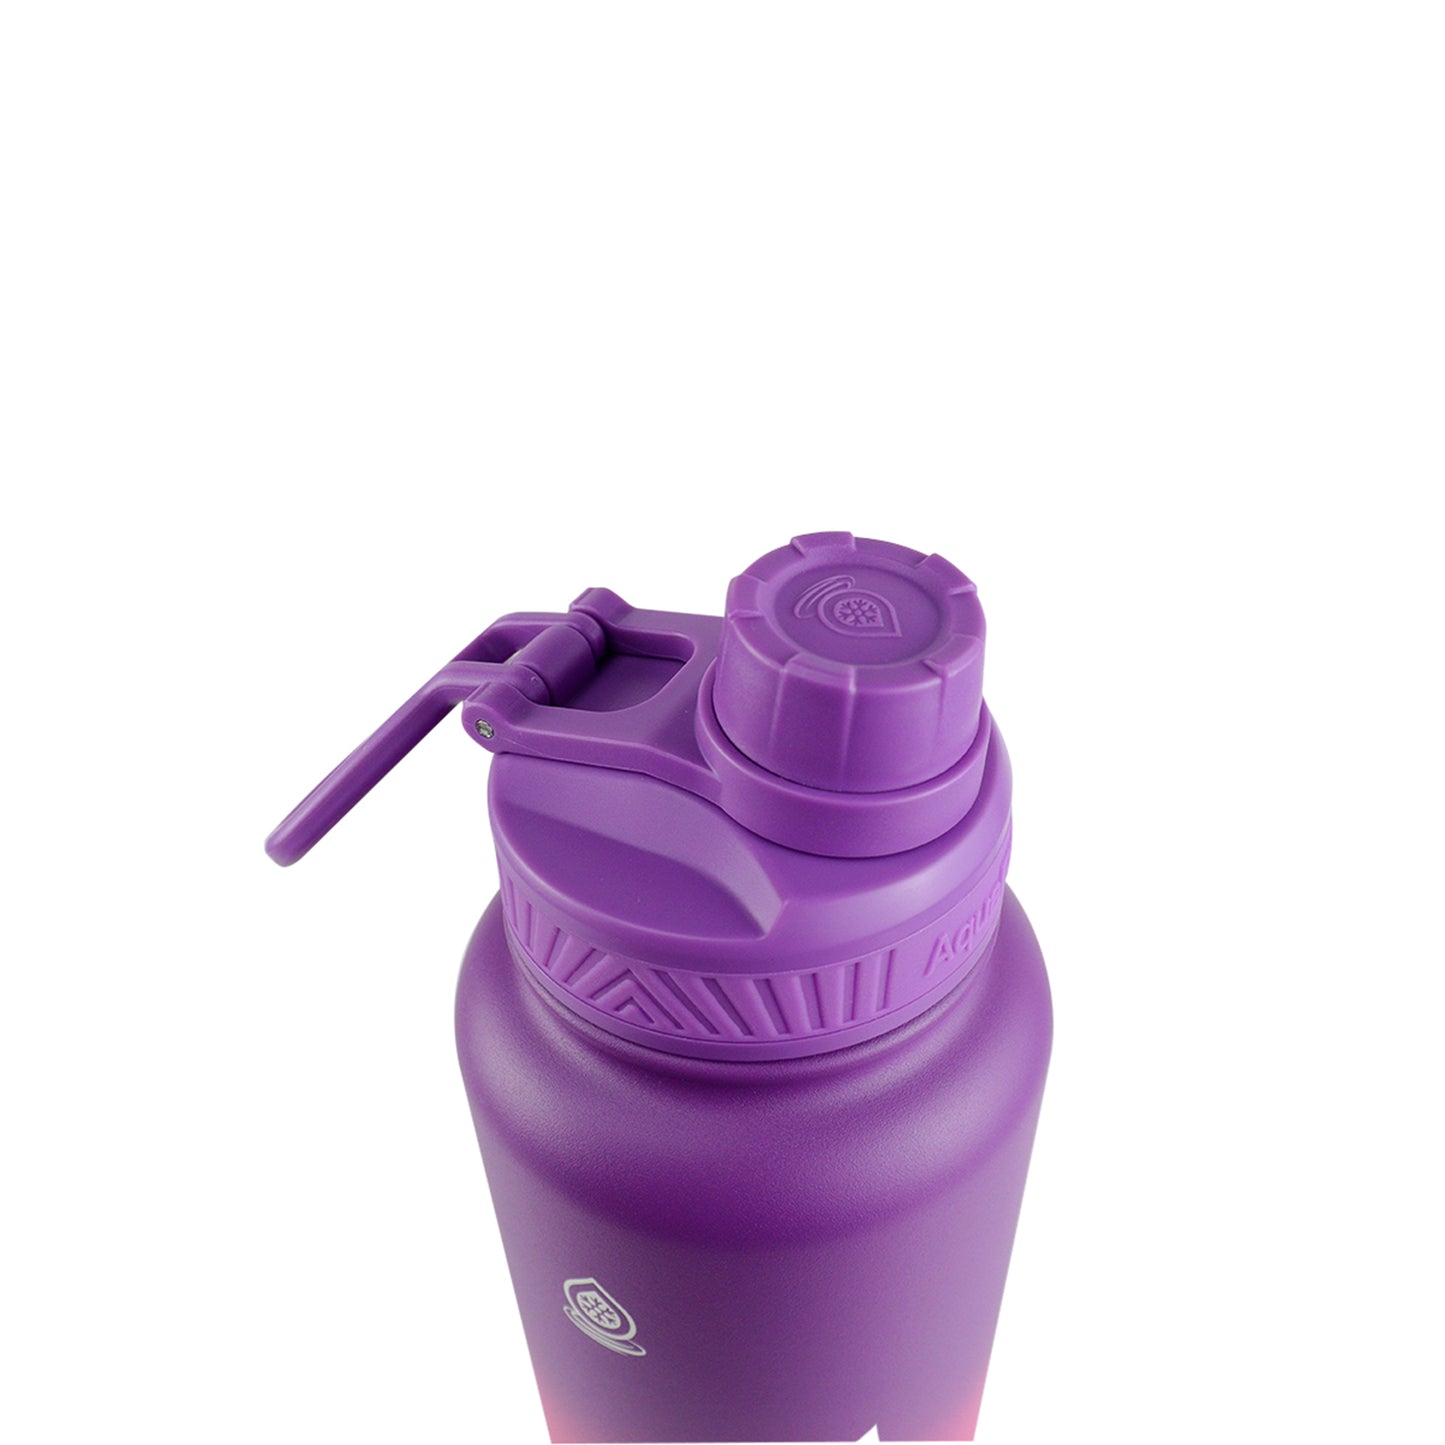 AquaFlask Dream 2 Vacuum Insulated Water Bottles 945ml (32oz)